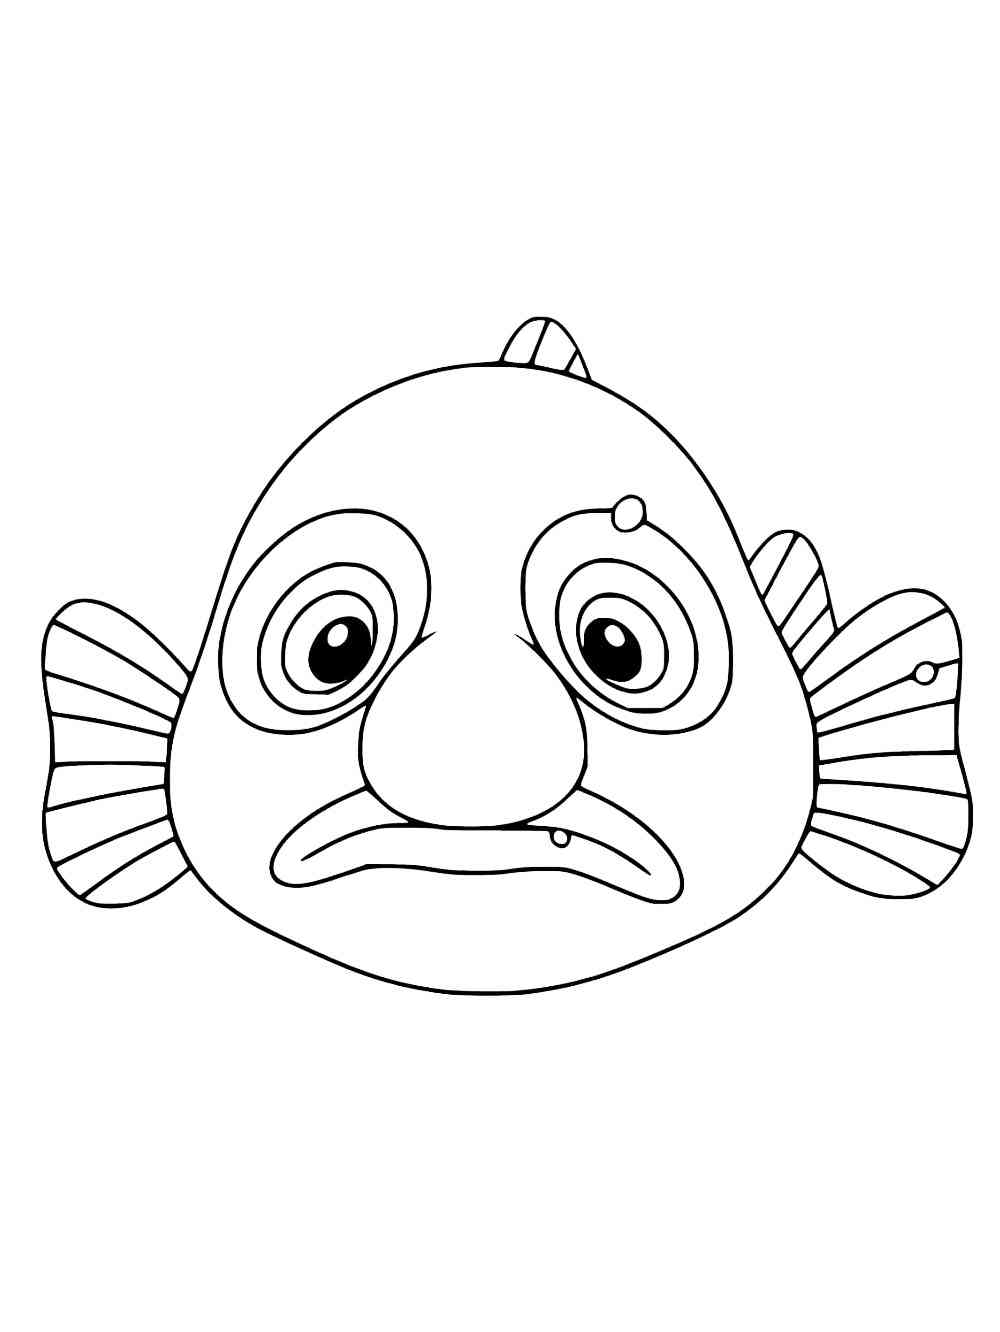 Blobfish 7 coloring page